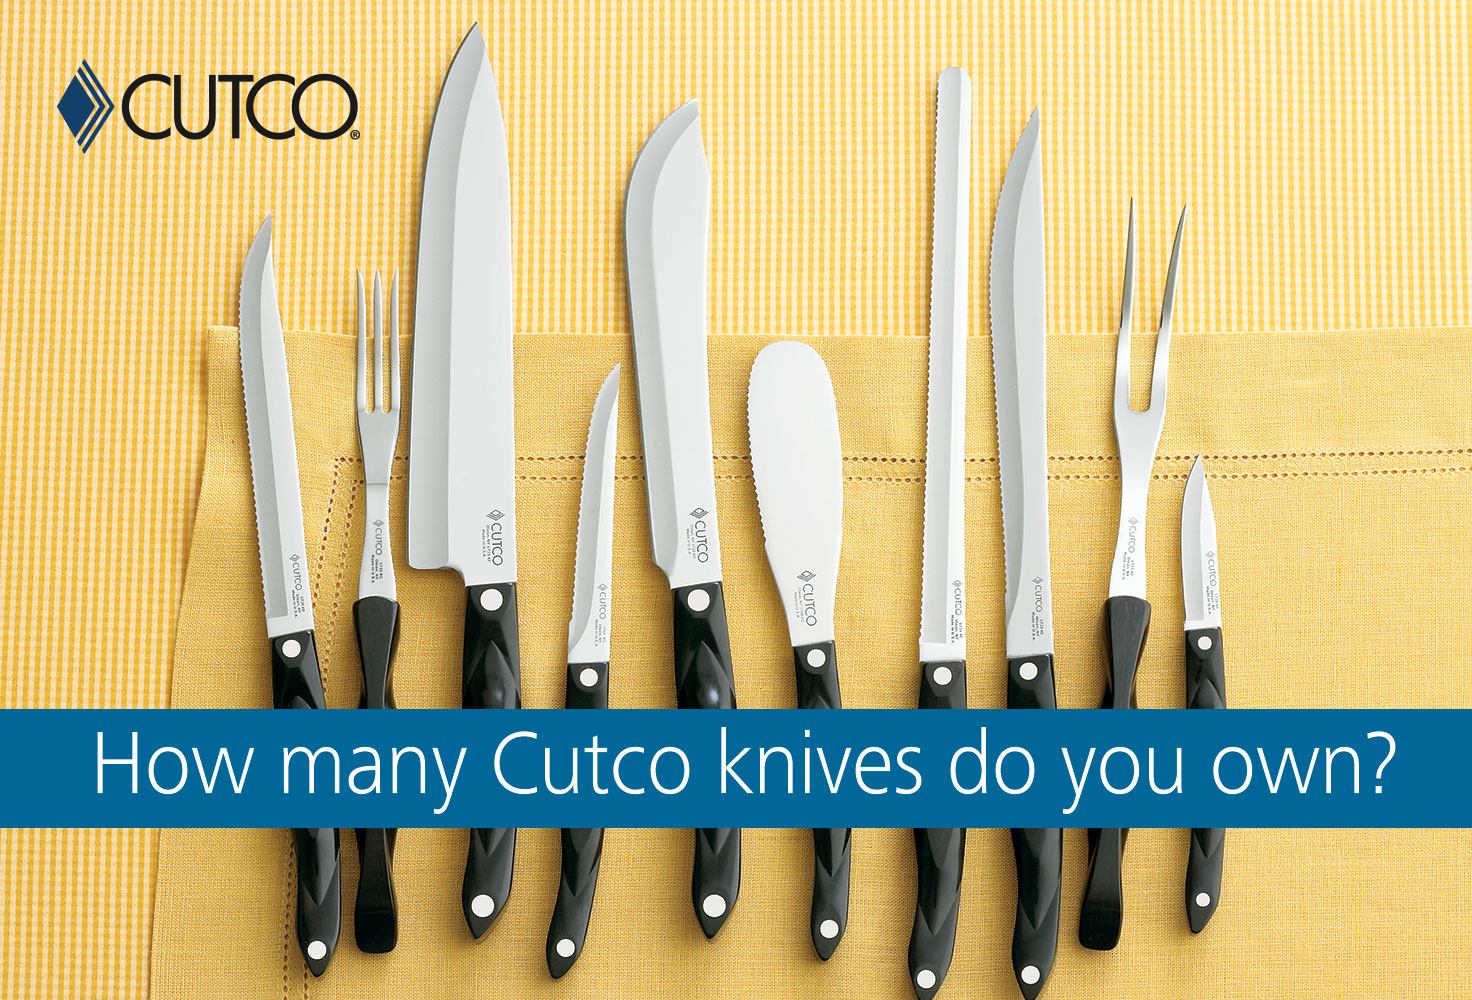 Cutco Cutlery at Costco Columbia